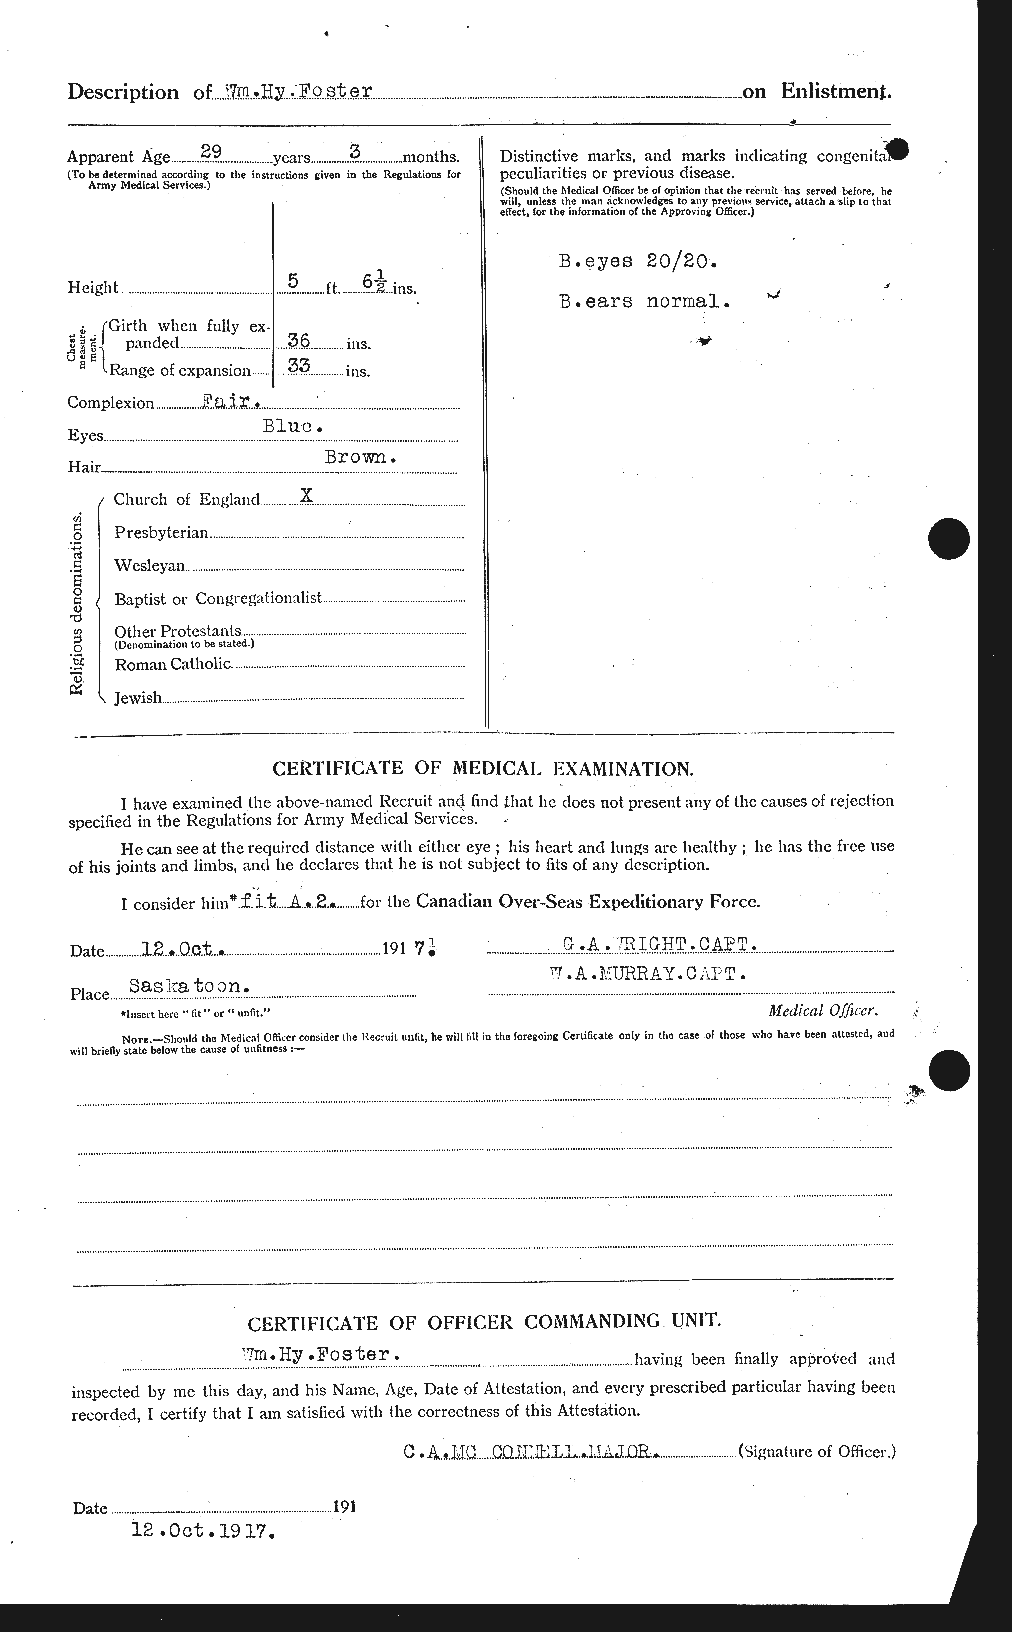 Dossiers du Personnel de la Première Guerre mondiale - CEC 328751b